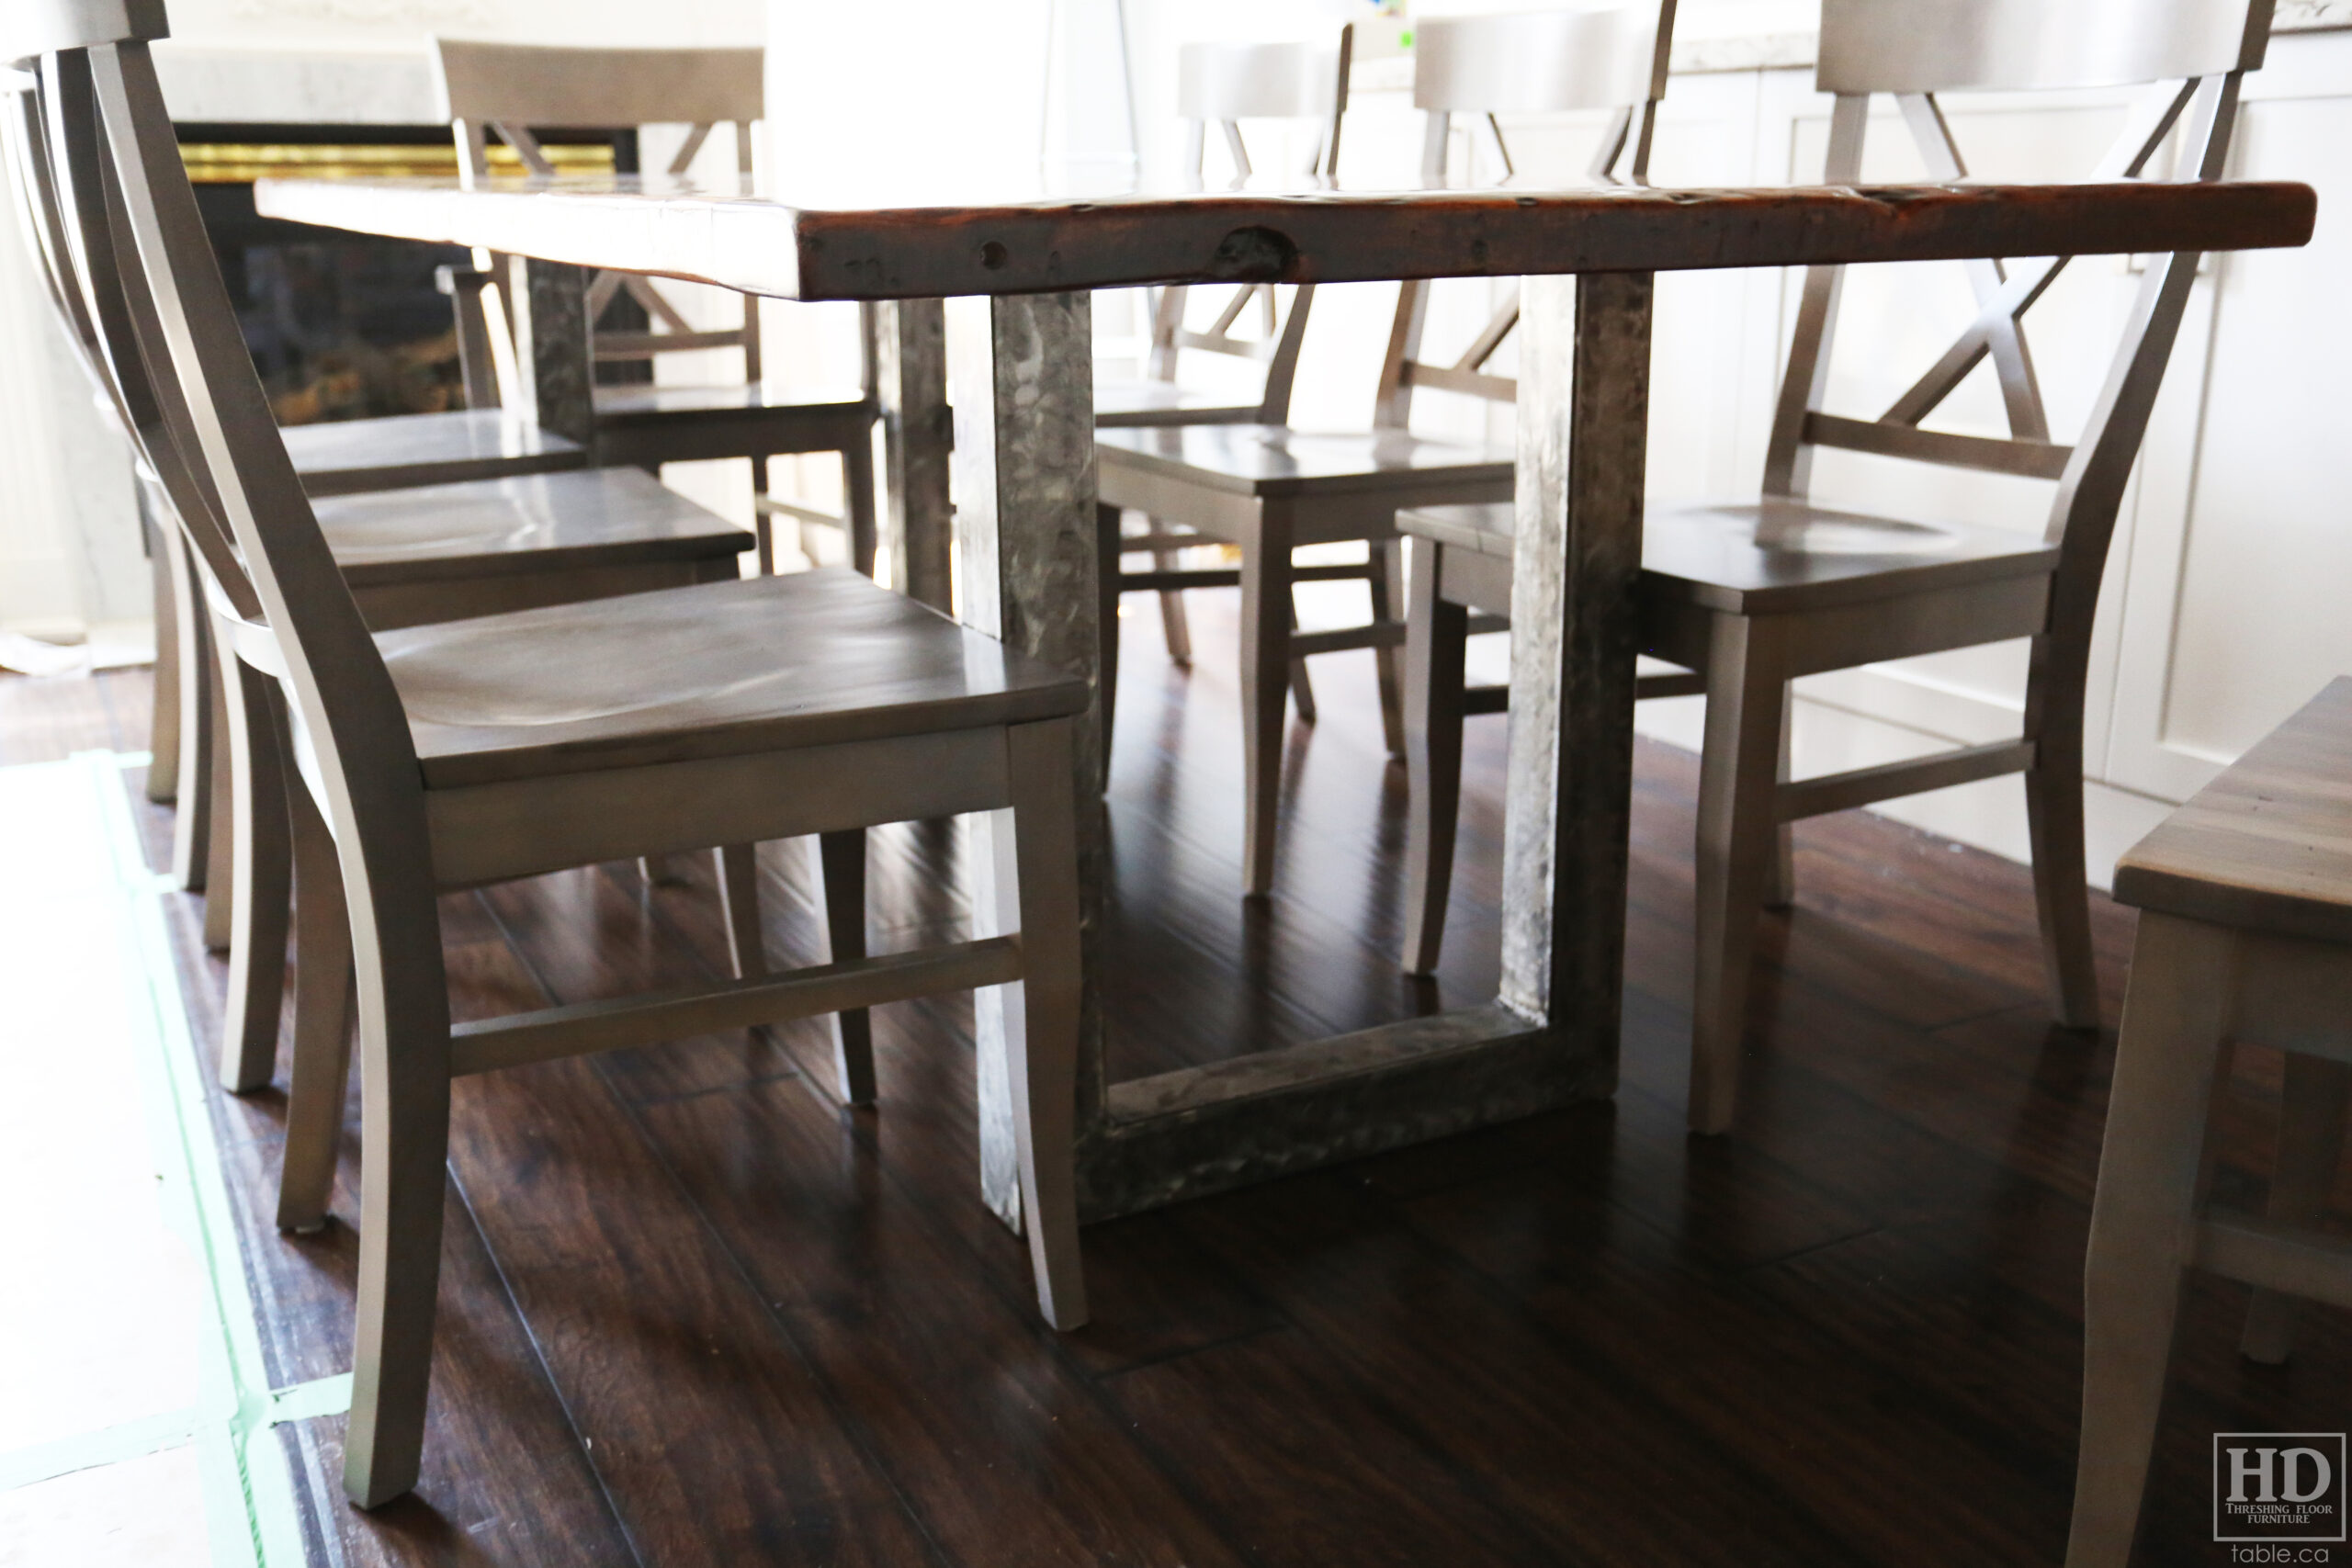 Metal Base Reclaimed Wood Table by HD Threshing Floor Furniture / www.table.ca